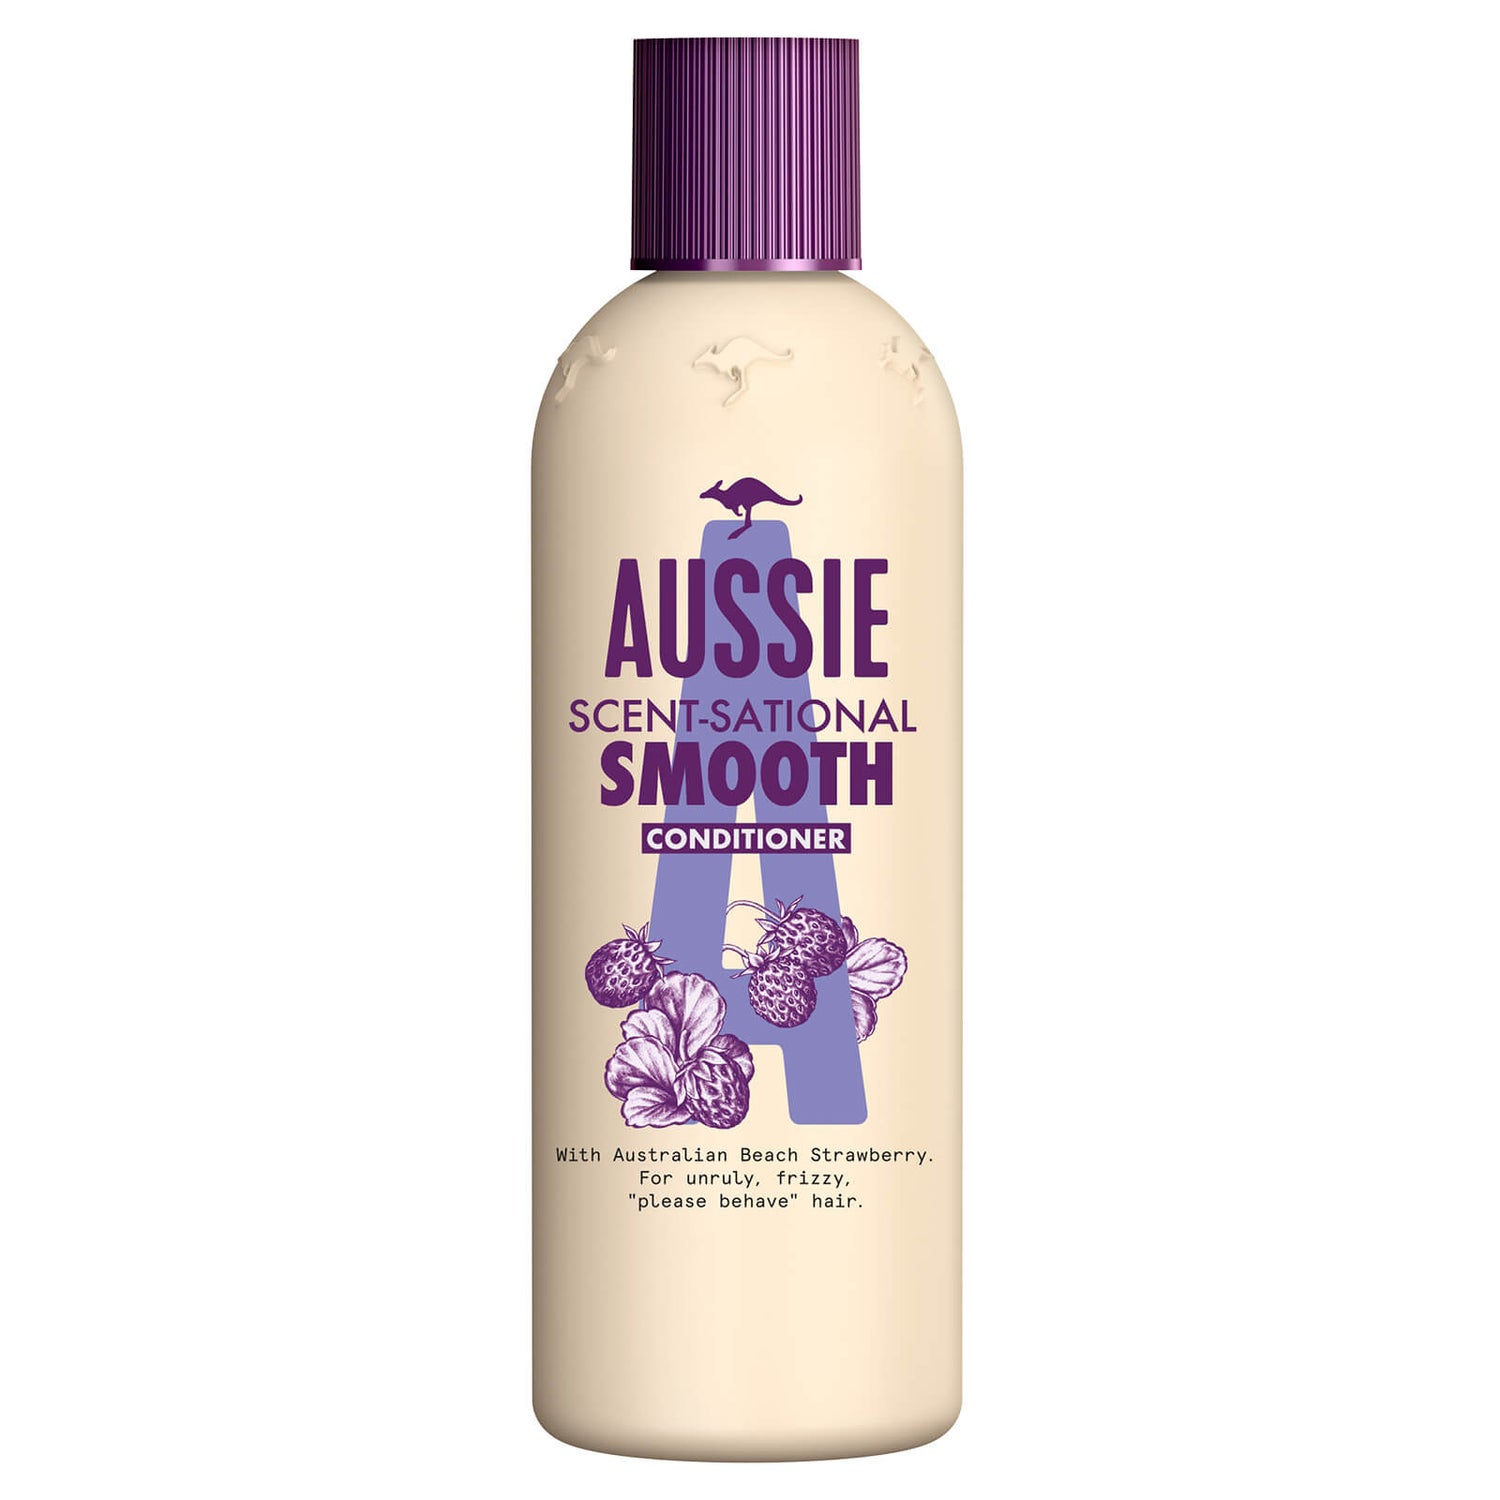 Aussie Scent-Sational Smooth Hair Conditioner 250ml